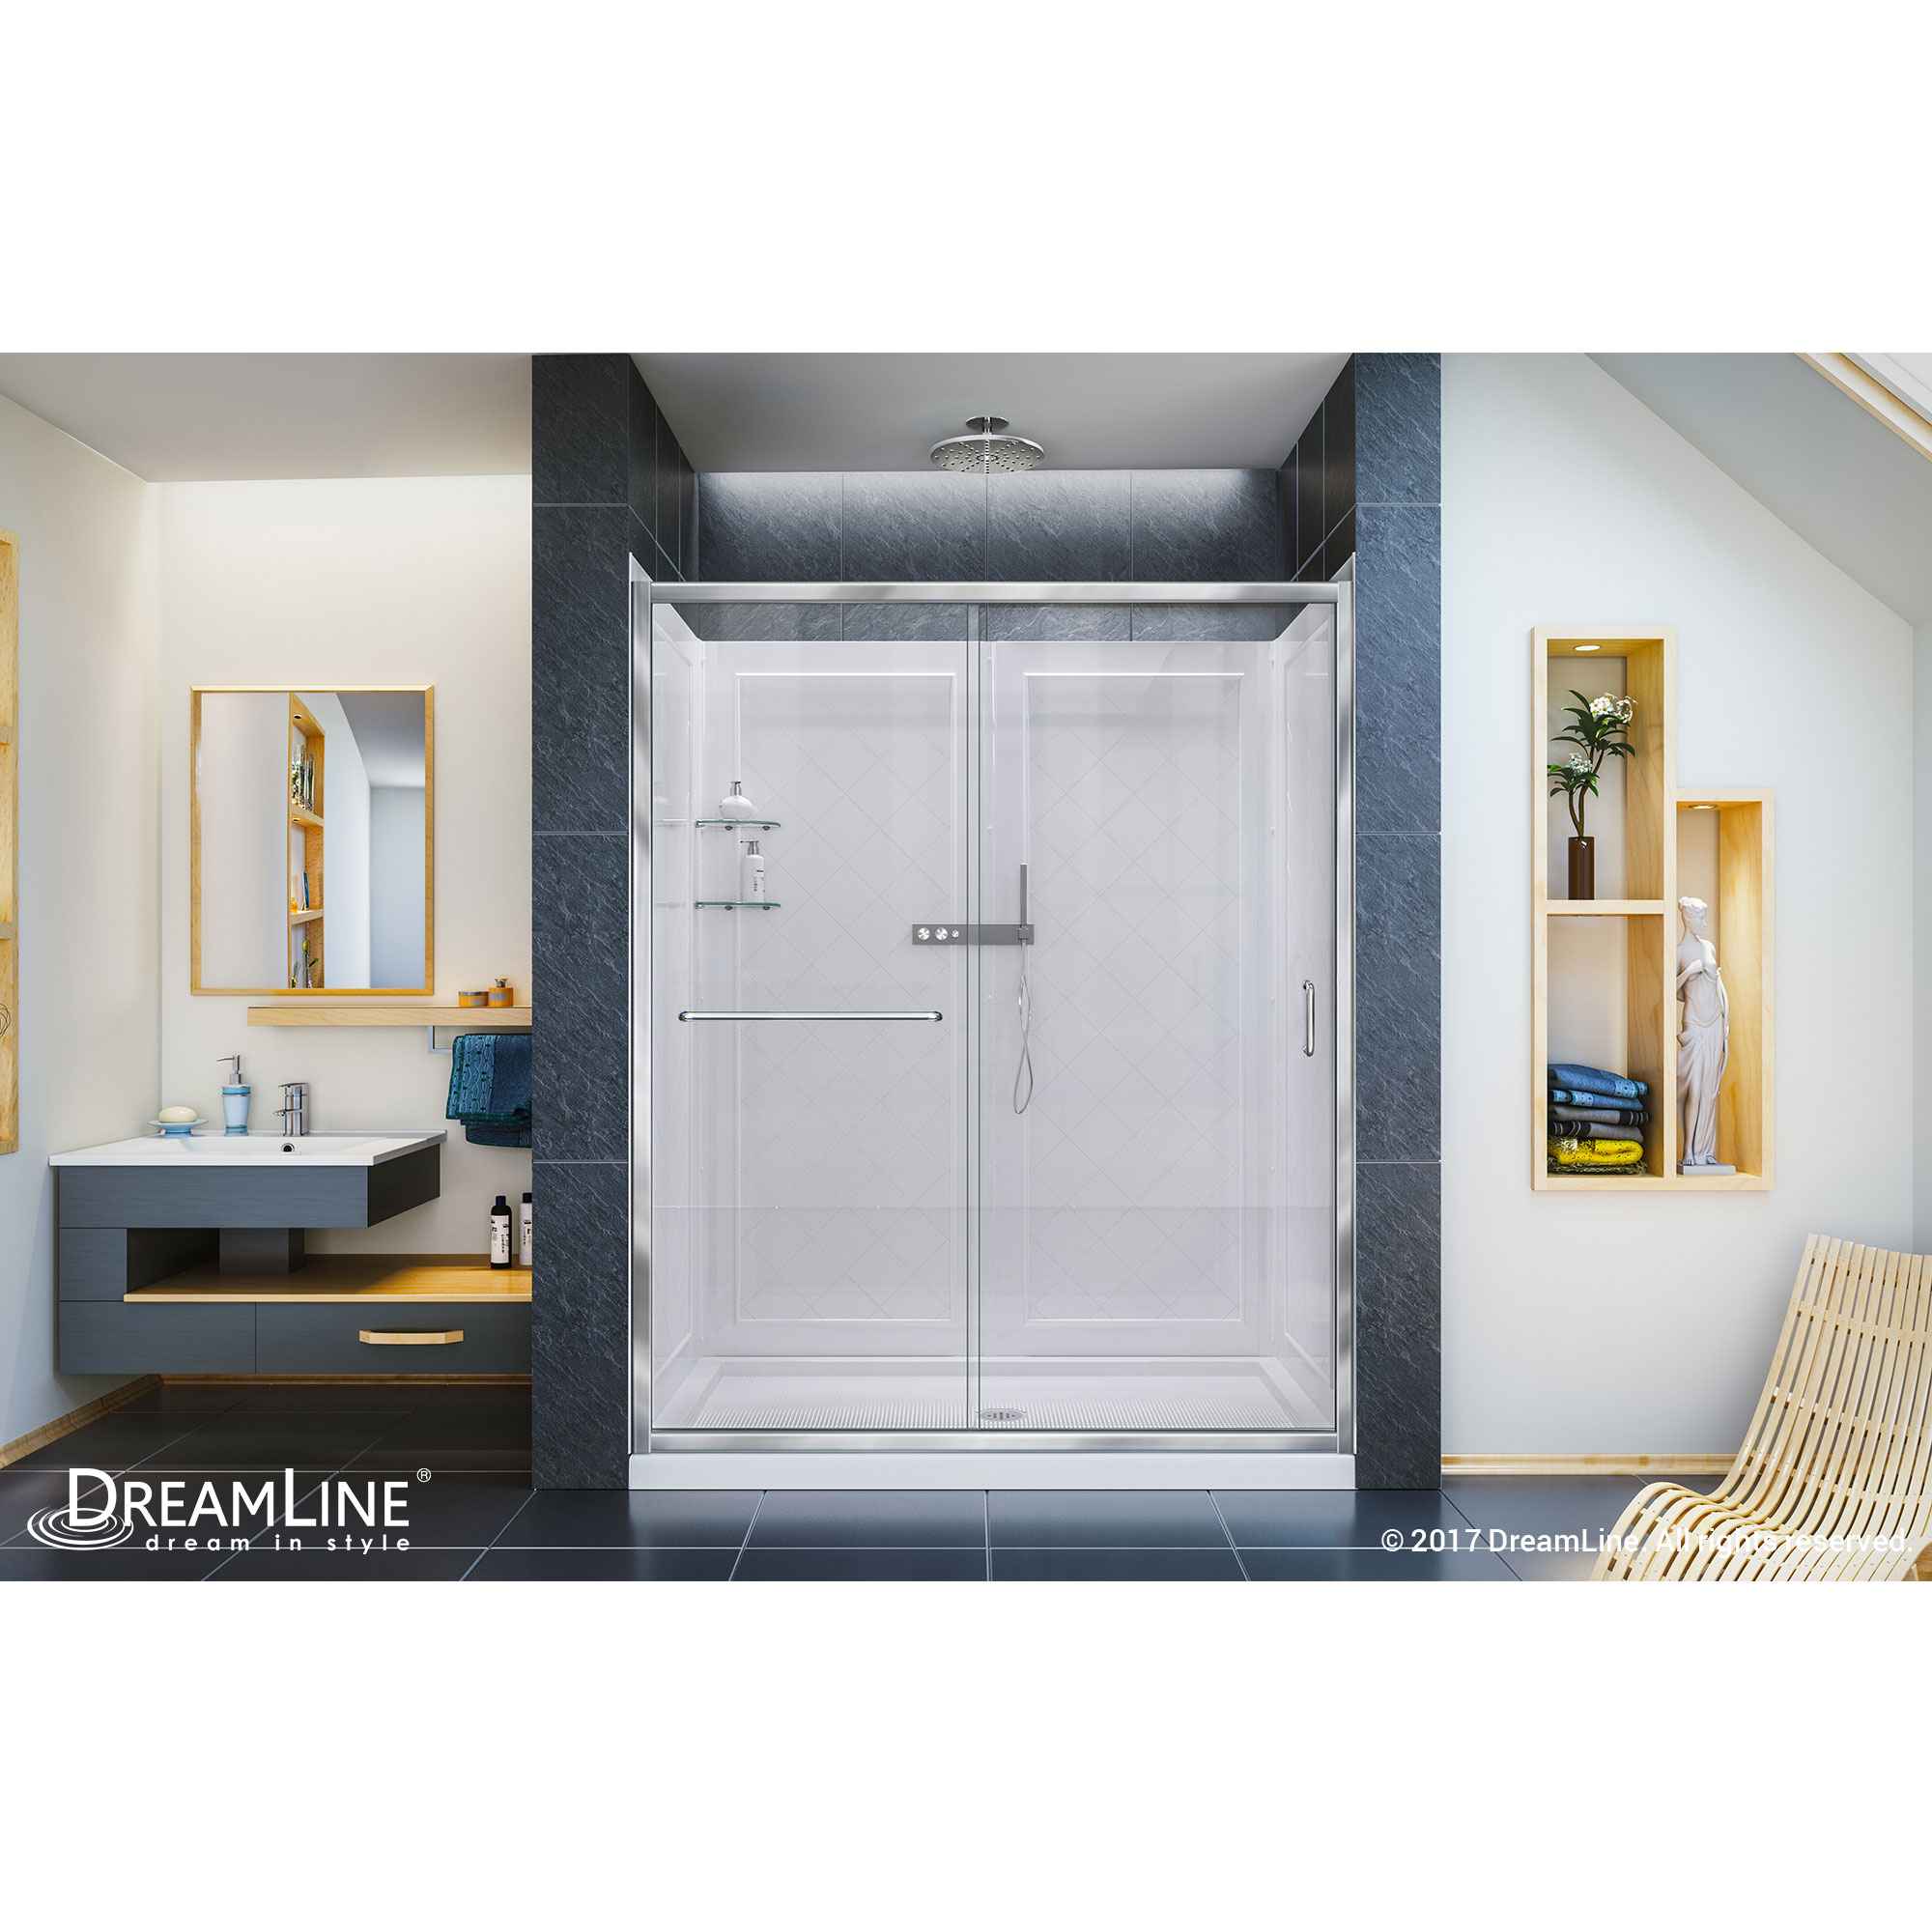 Infinity-Z Frameless Sliding Shower Door, 34" by 60" Shower Base & QWALL-5 Shower Backwall